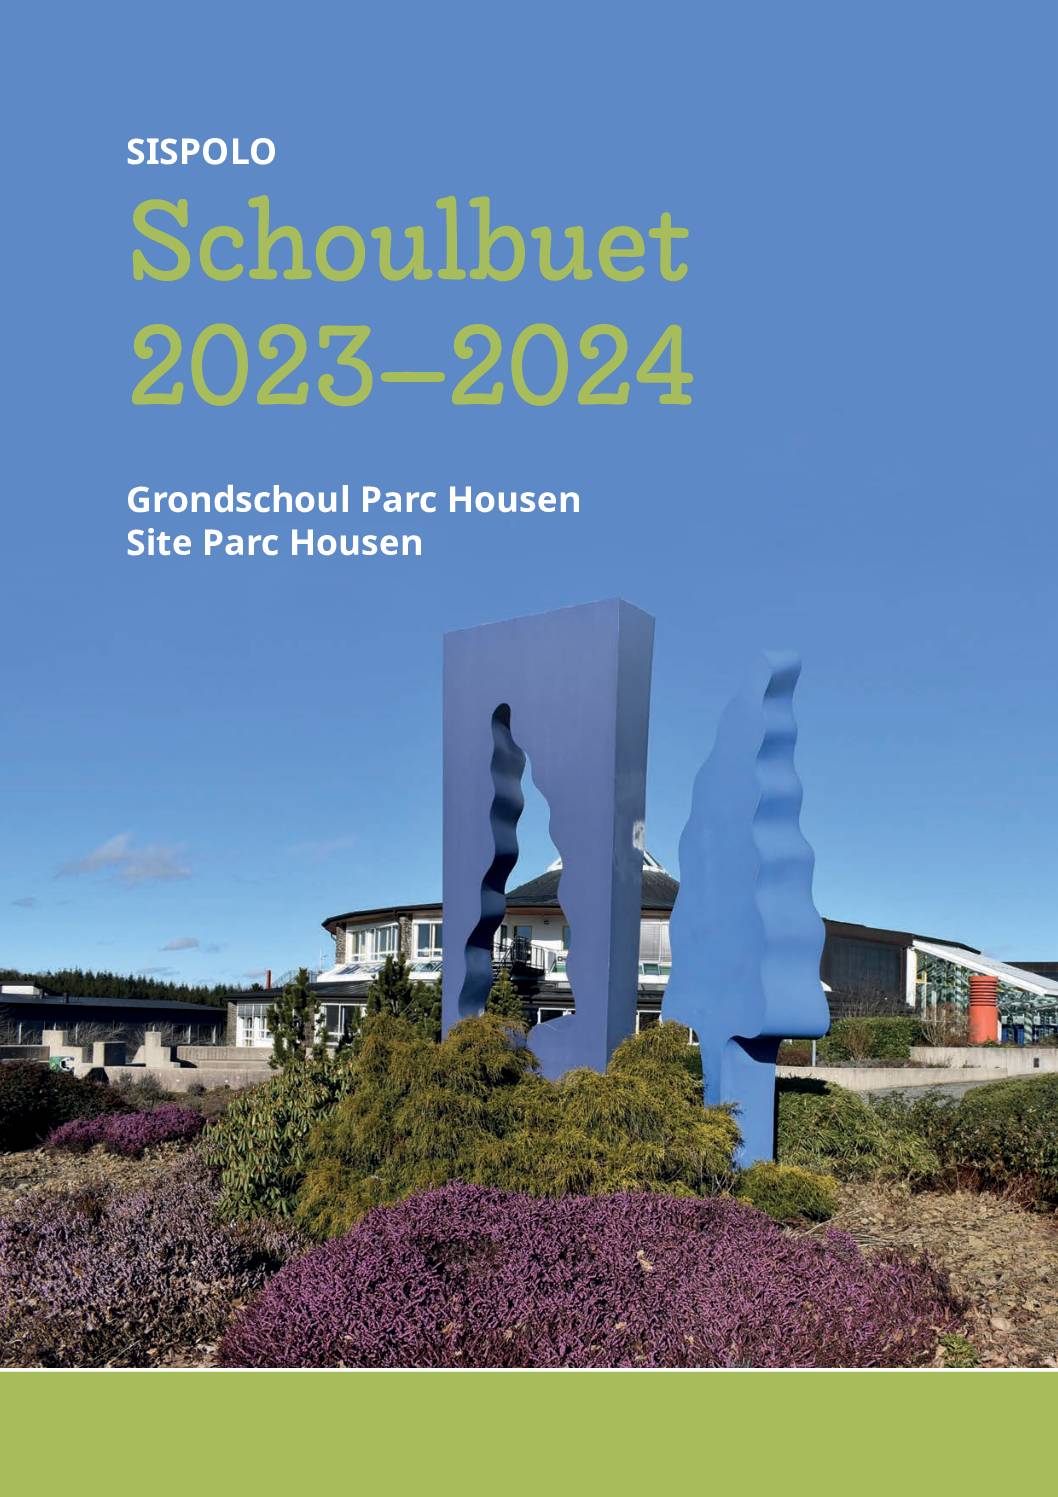 SI Hosingen Schoulbuet 2023-24